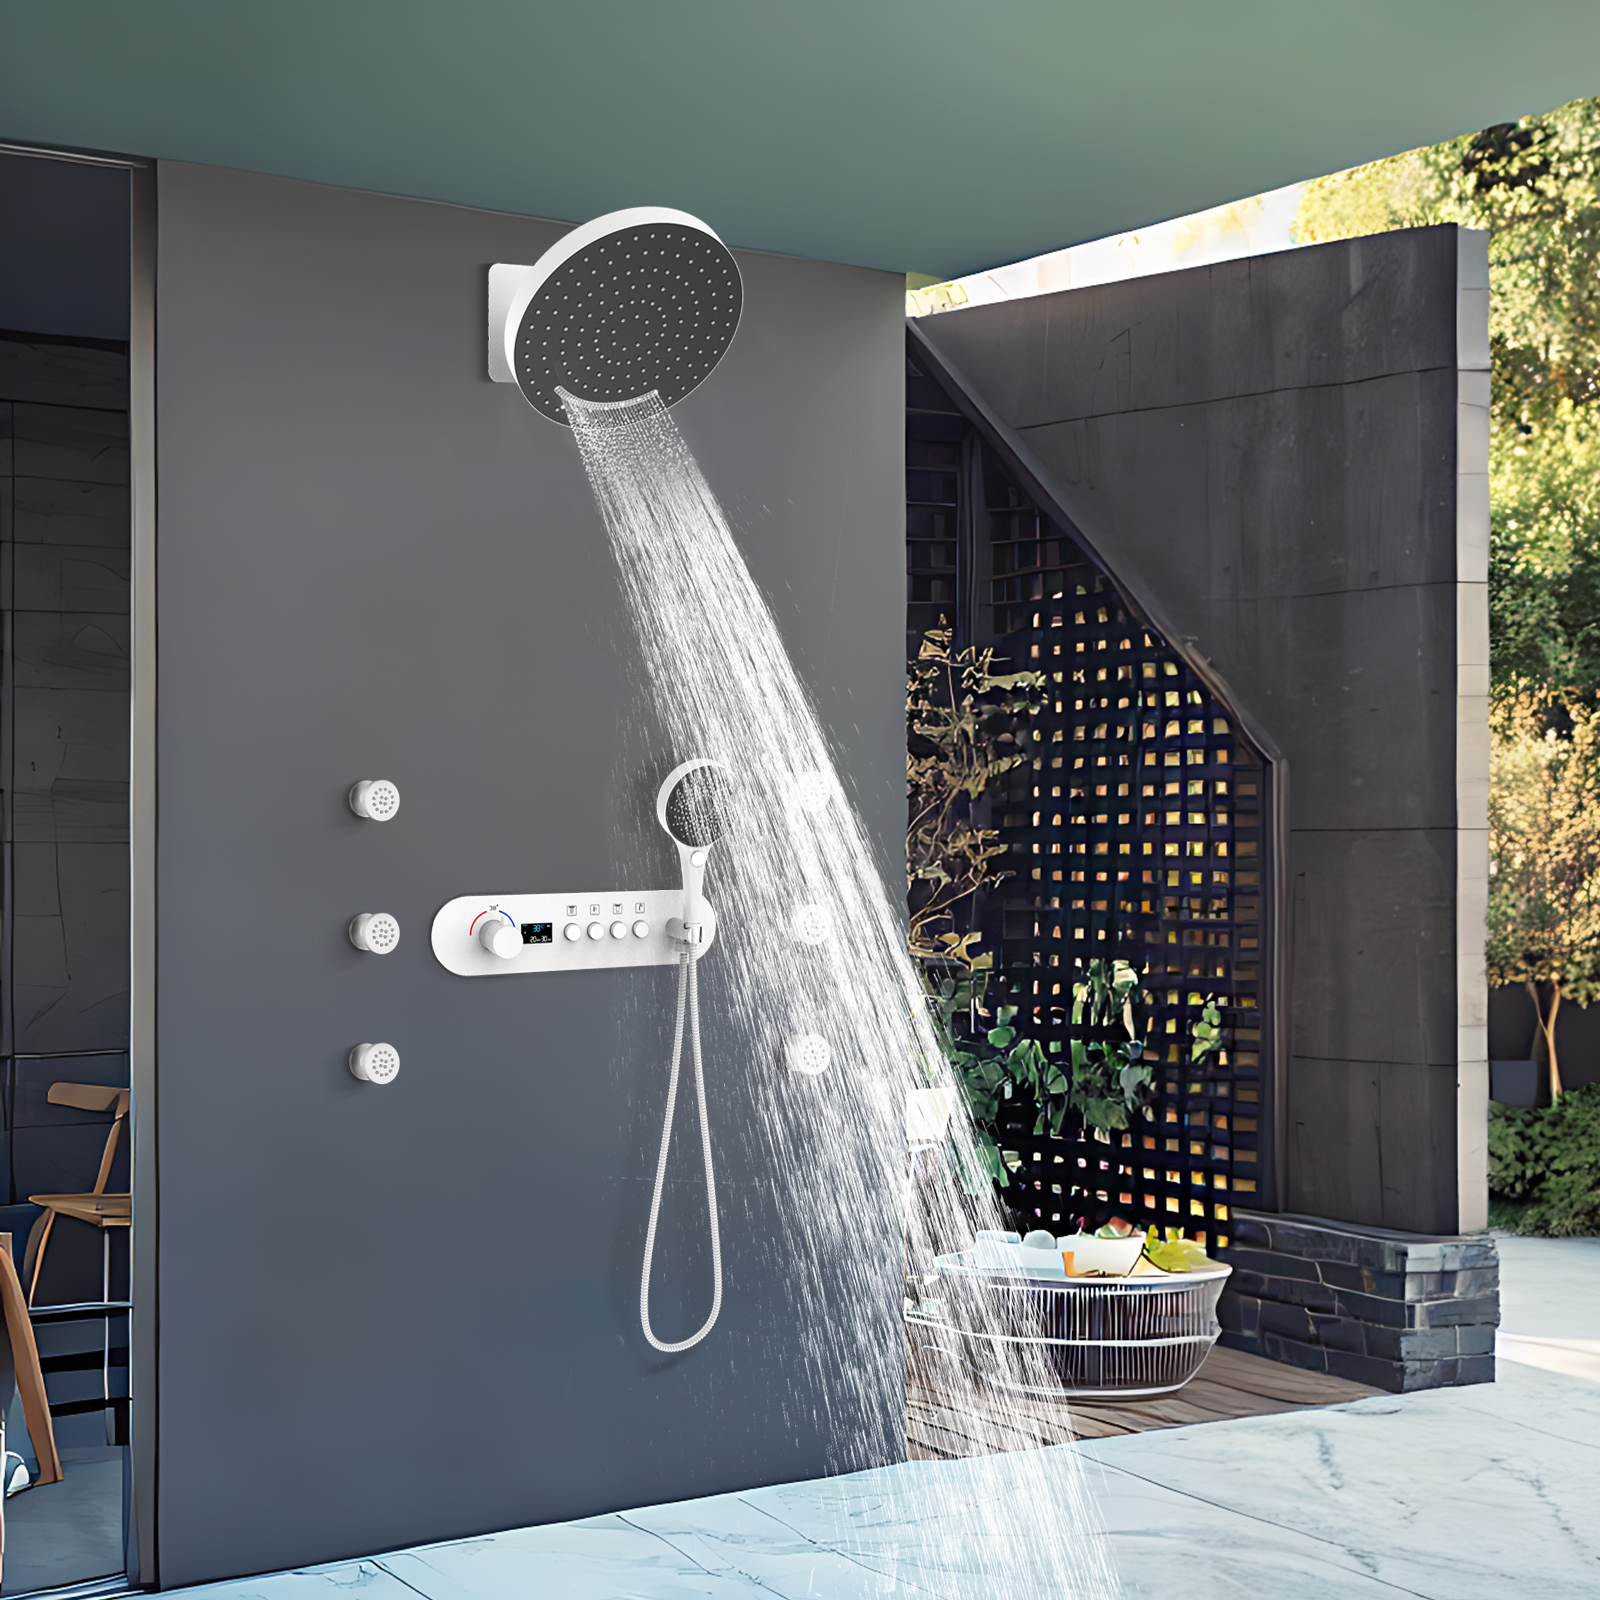 Sistema de ducha de placa moderno, Kit de ducha con chorro de agua, cabezal de ducha de bronce con rociador lateral blanco